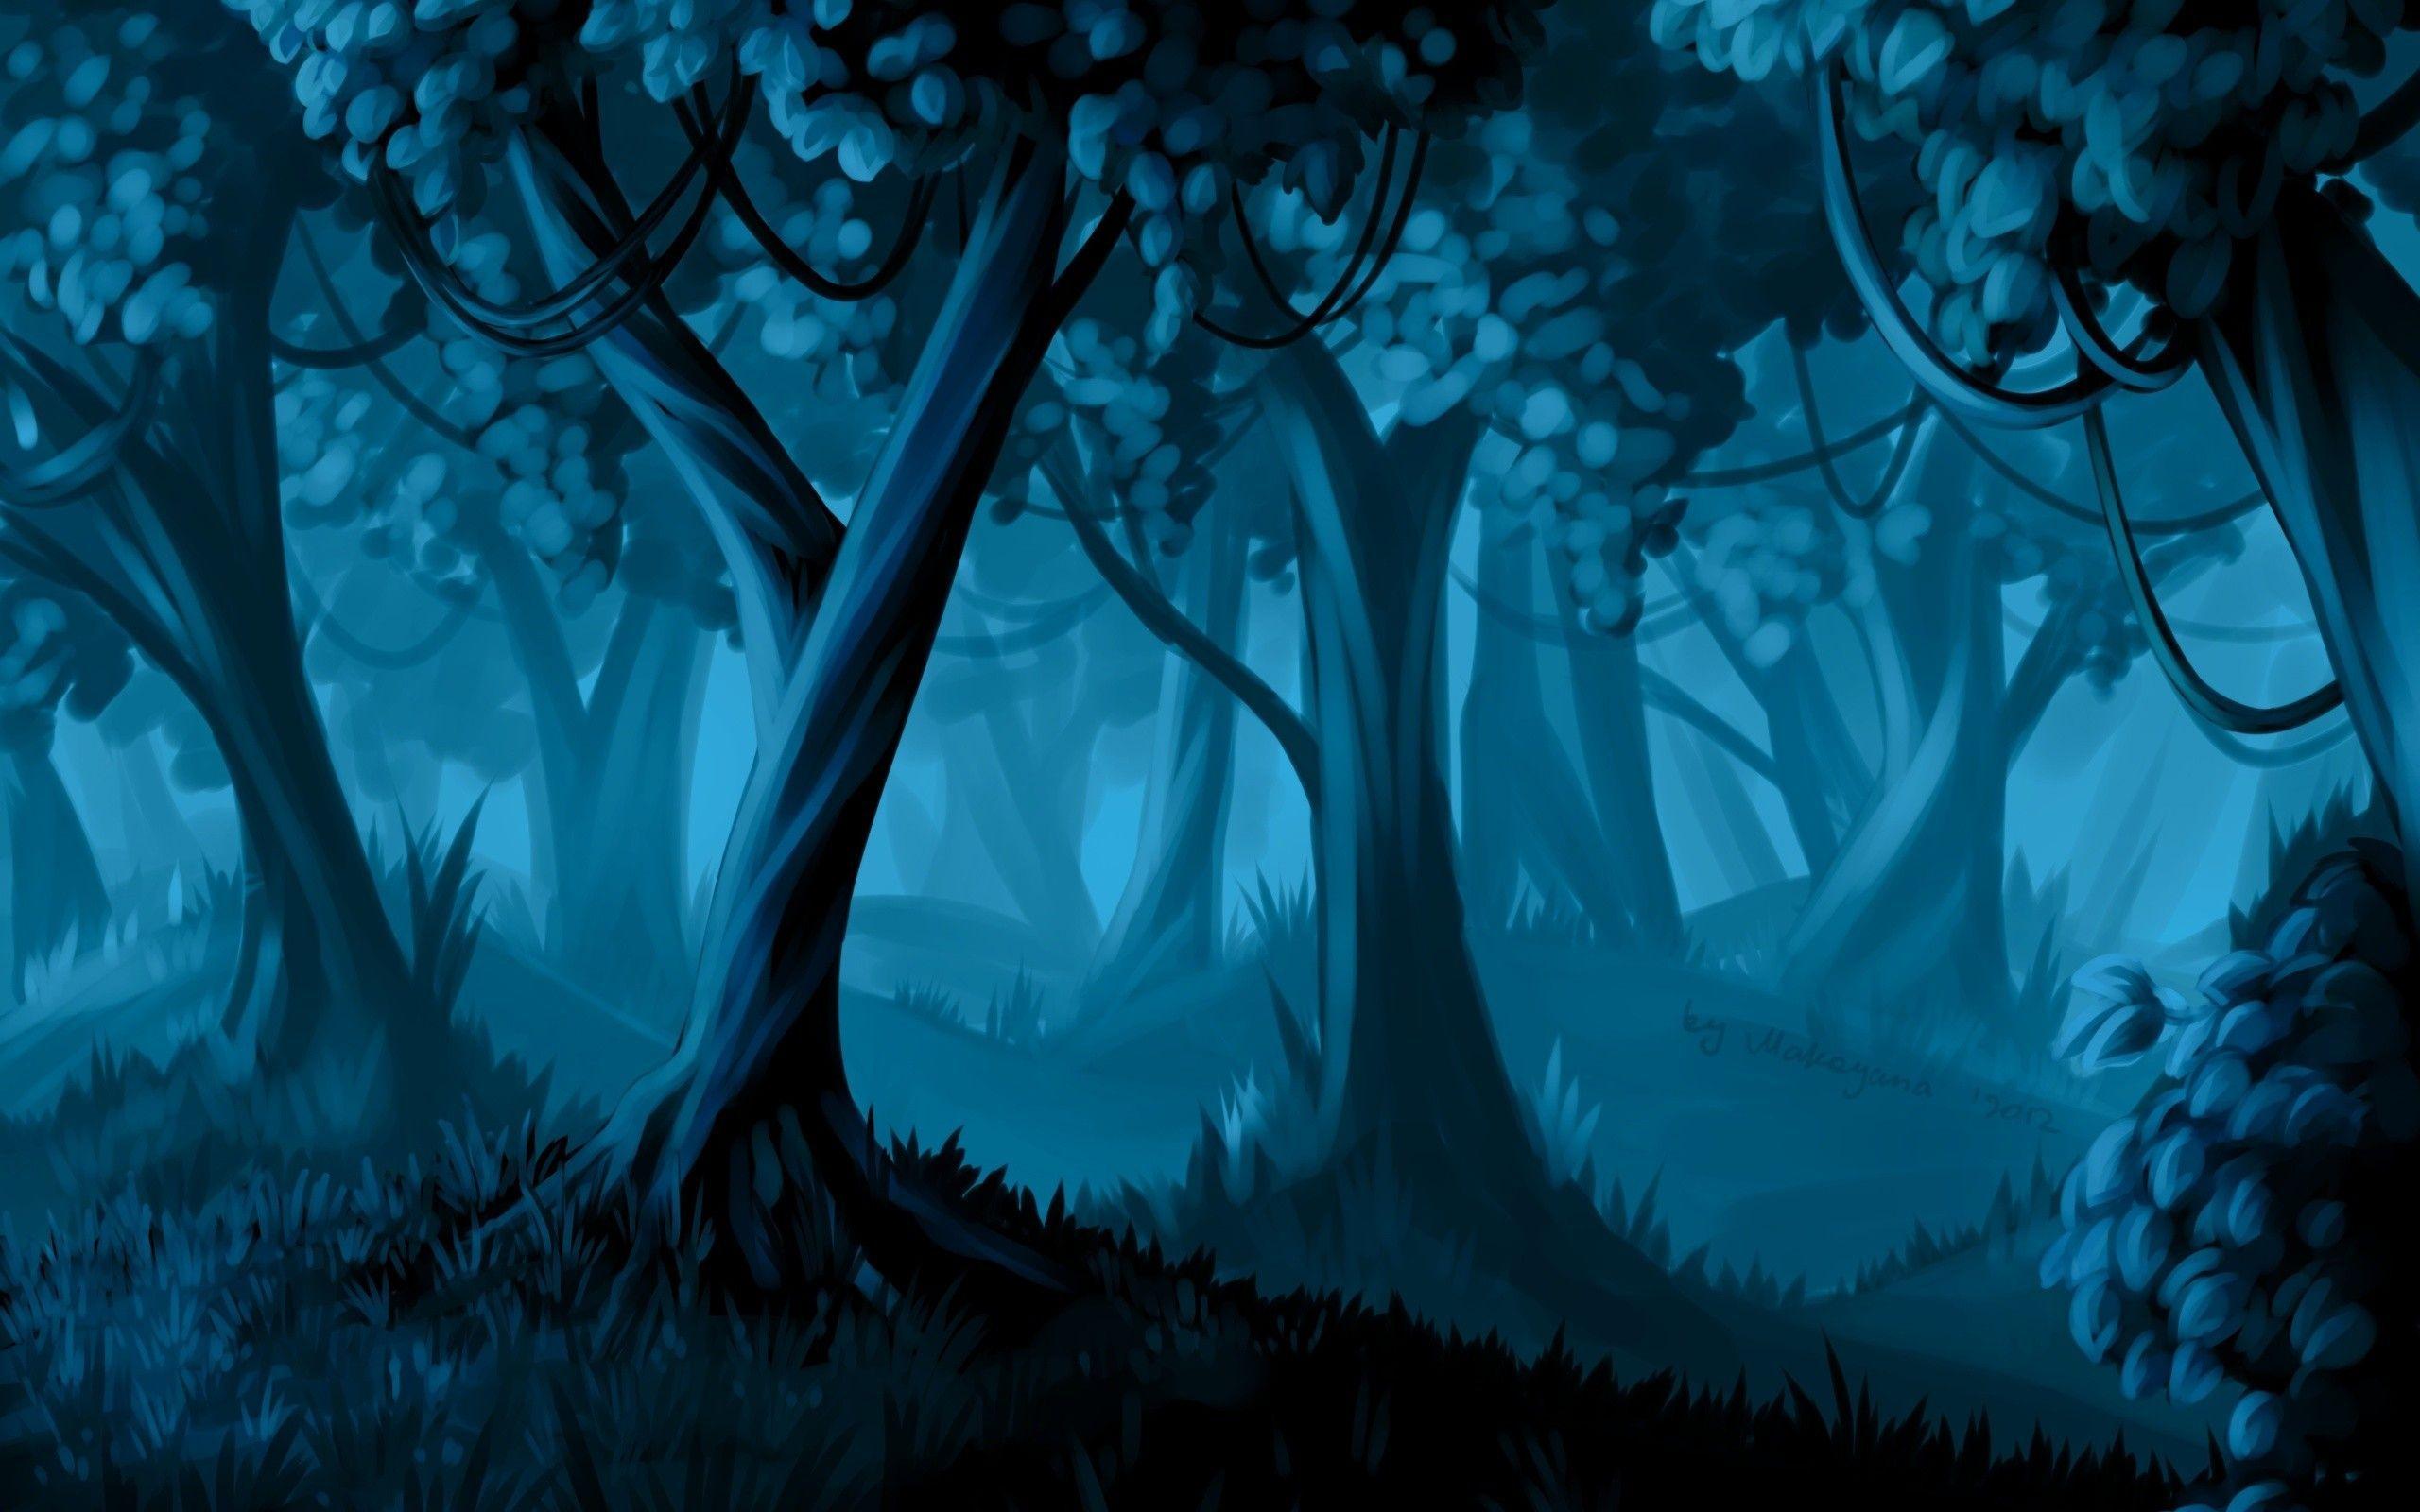 2560x1600 Rừng xanh trong đêm - cây trong truyện.  Bản vẽ, Tranh, Bản phác thảo, Thiết kế, Hình nền tác phẩm nghệ thuật.  HD Wallp.  Rừng tưởng tượng, Bức tranh rừng, Rừng xanh